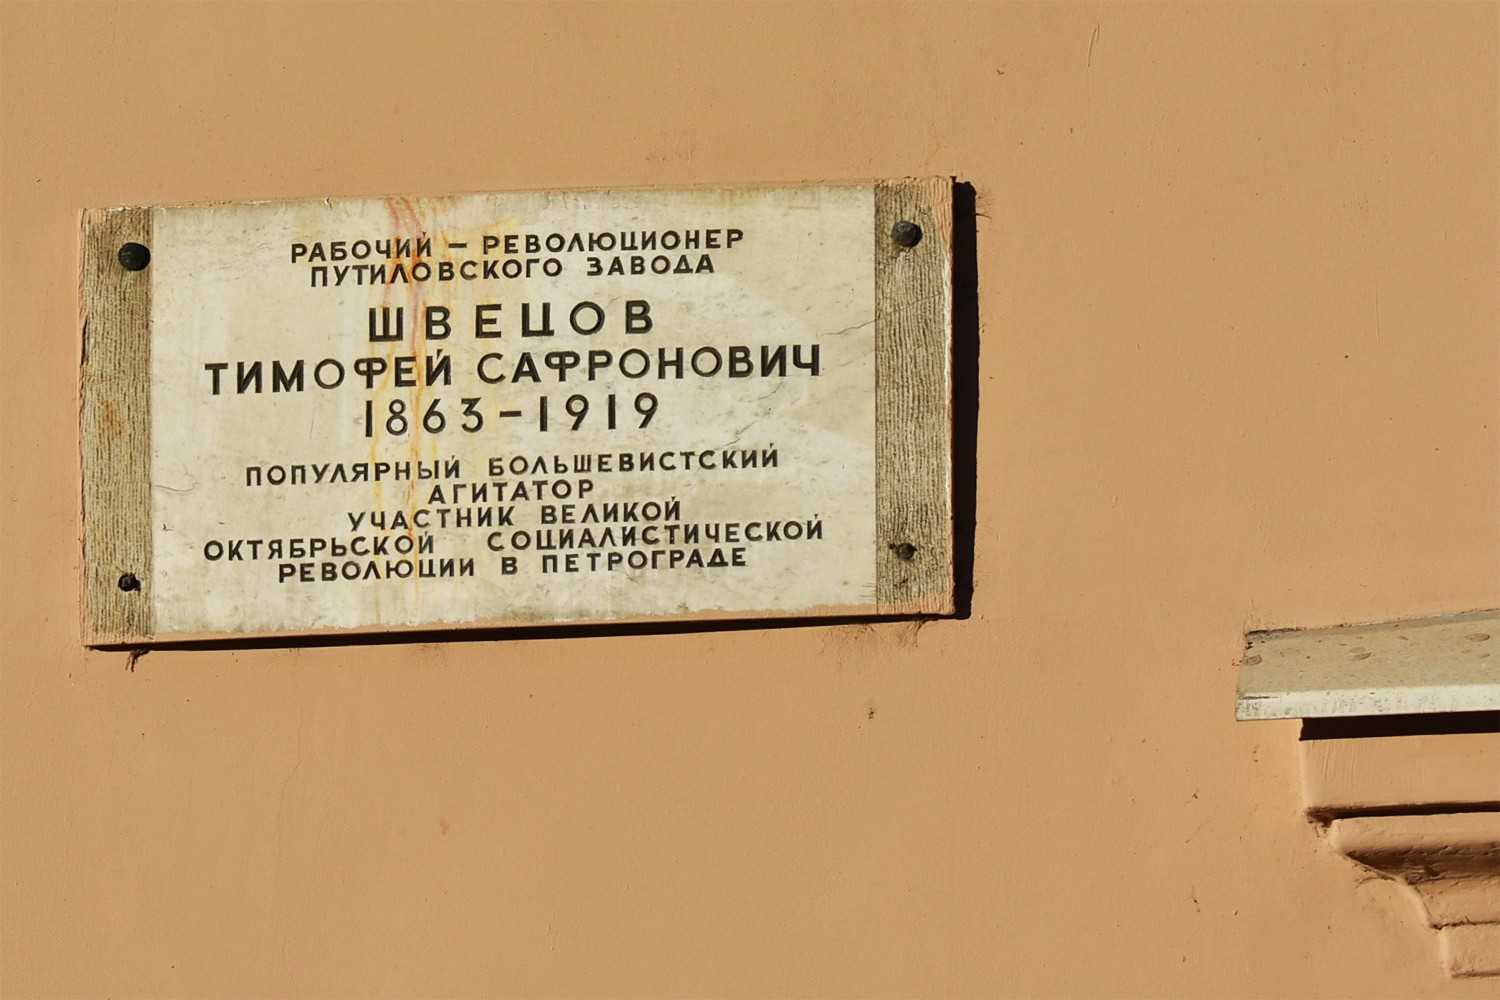 Petersburg, Проспект Стачек, 16 (подъезды 1-11). Petersburg — Memorial plaques